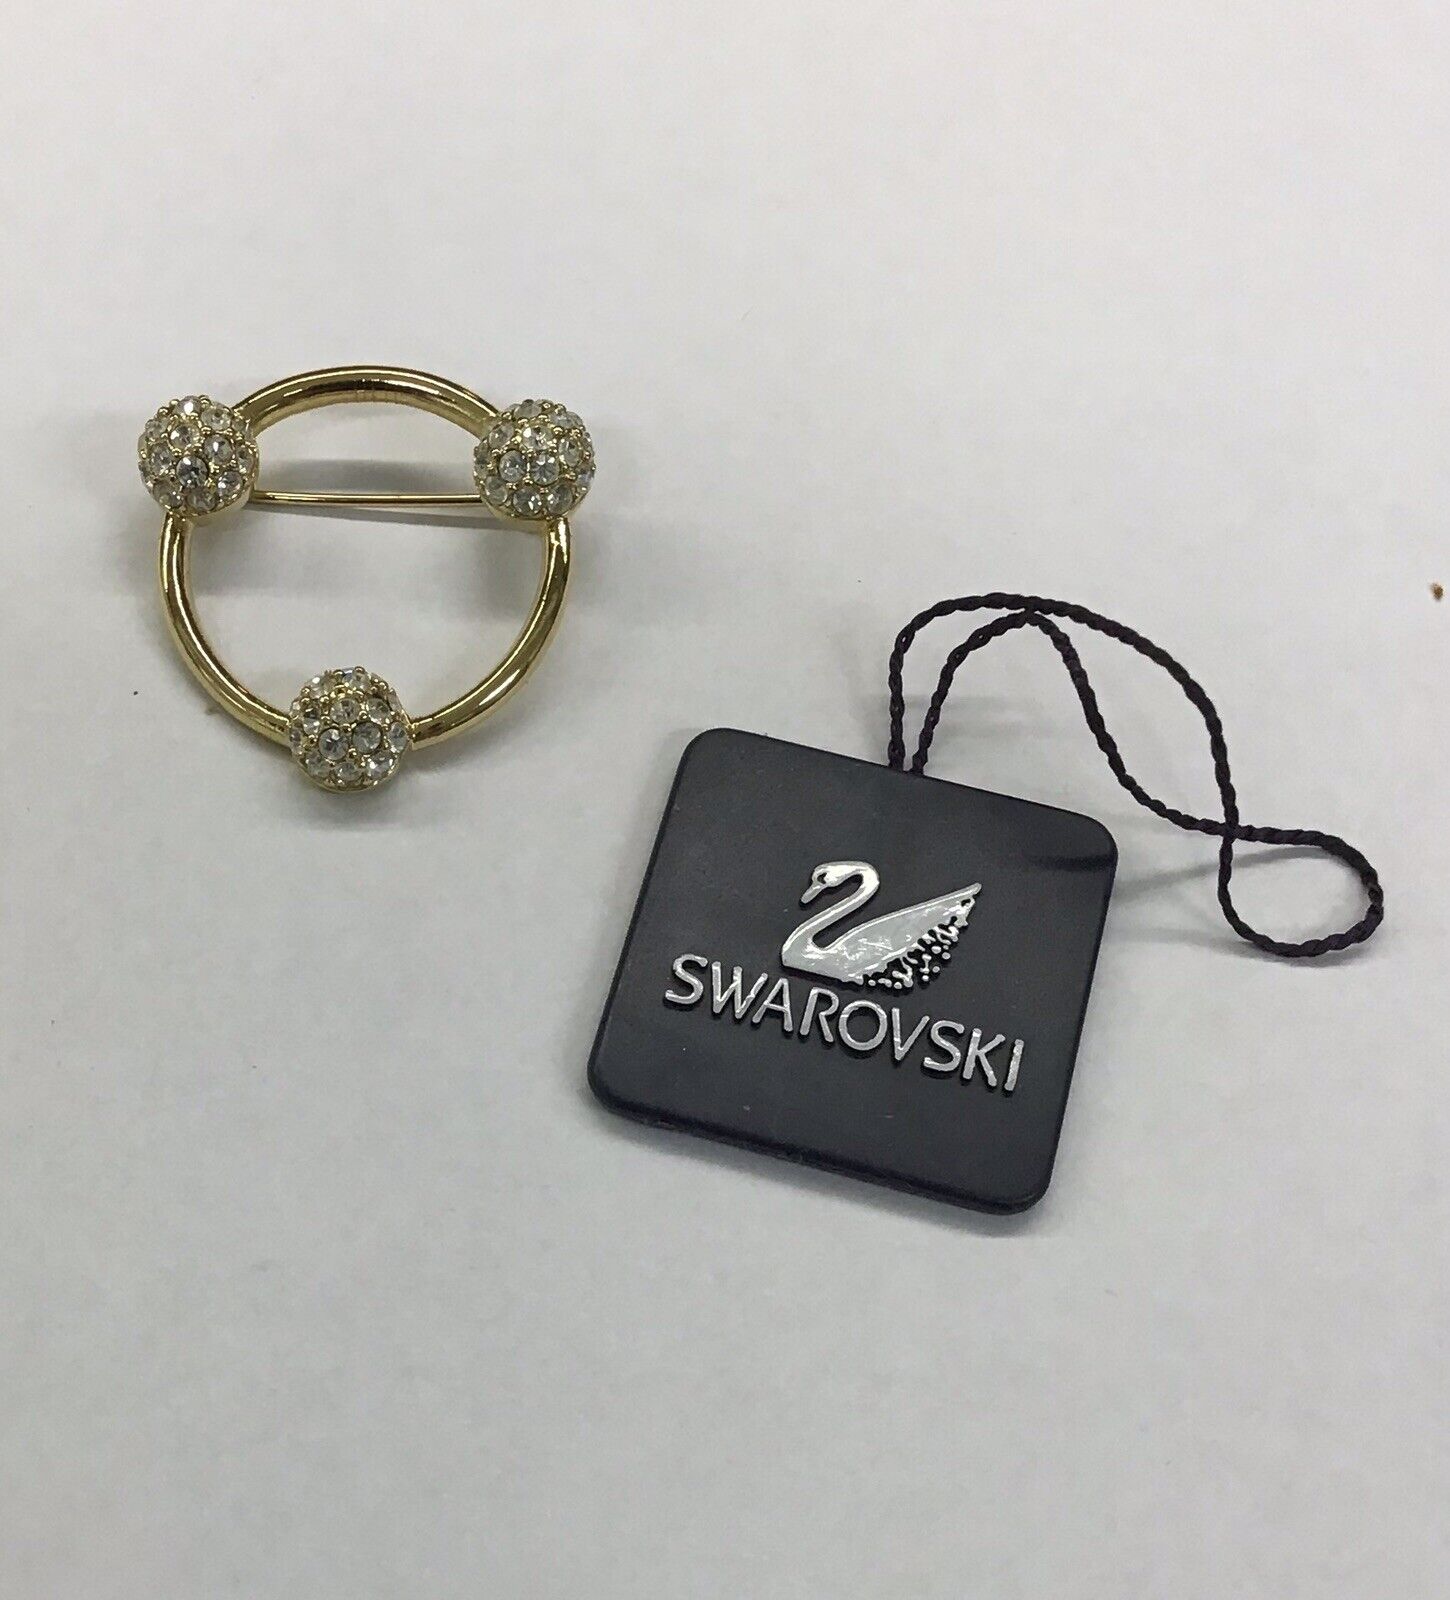 Swarovski Brooch Pin Gold Tone Circle With Three Crystal Pave Balls